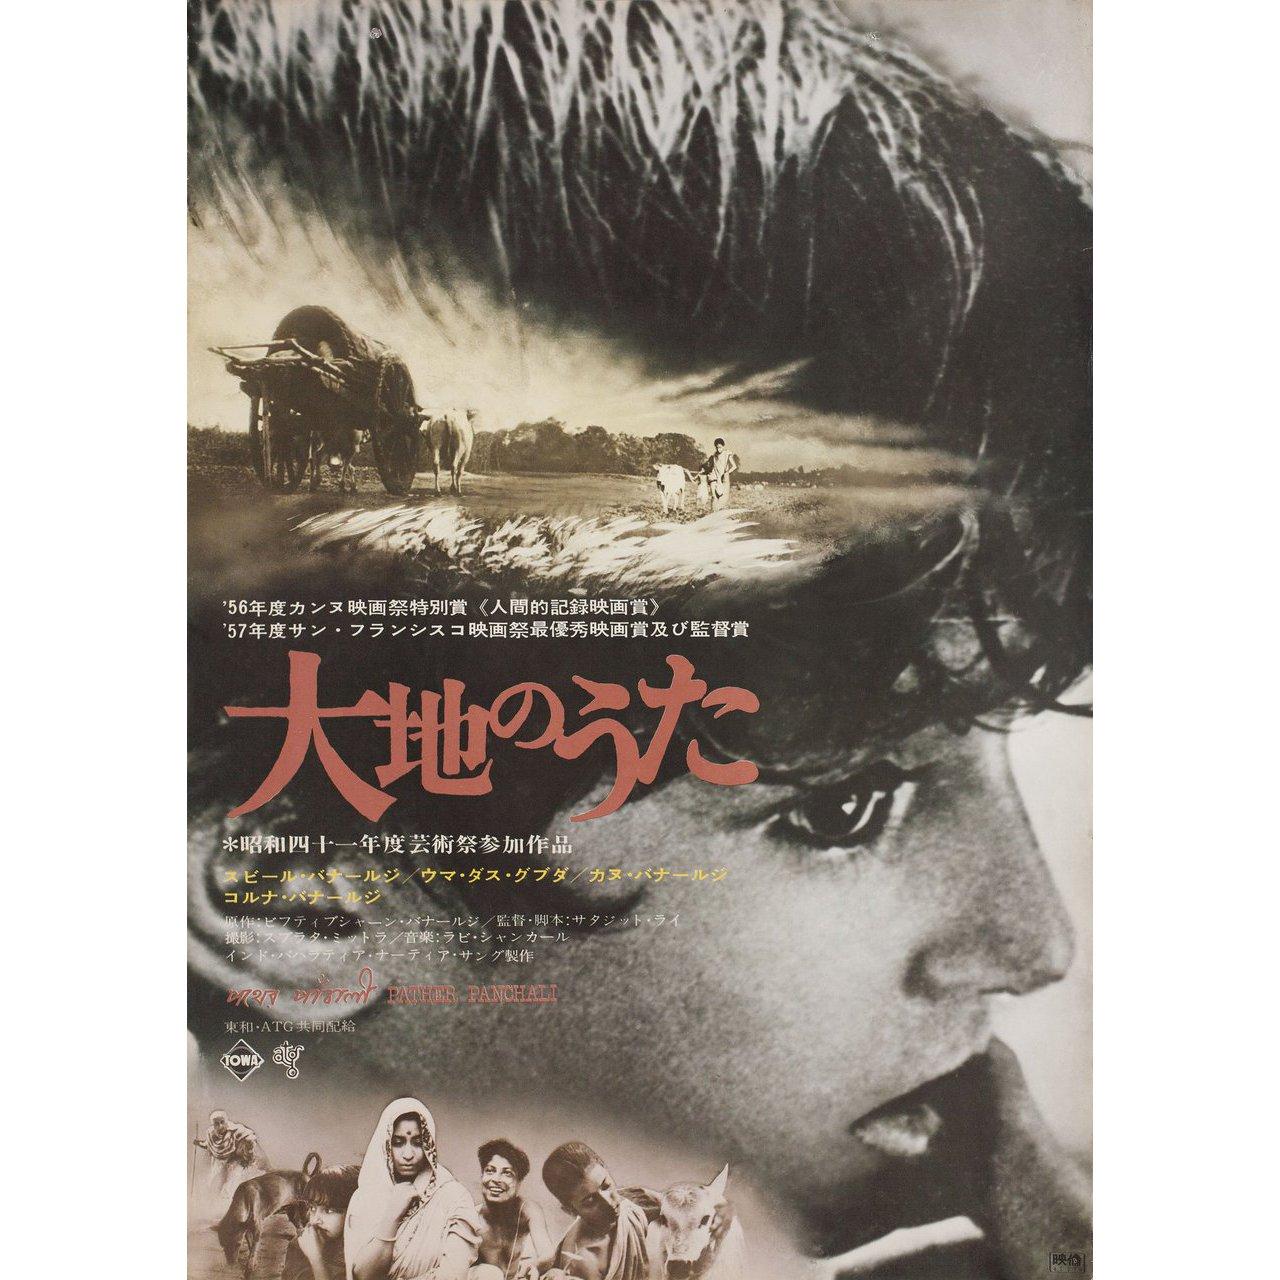 Pather Panchali 1955 Japanese B2 Film Poster